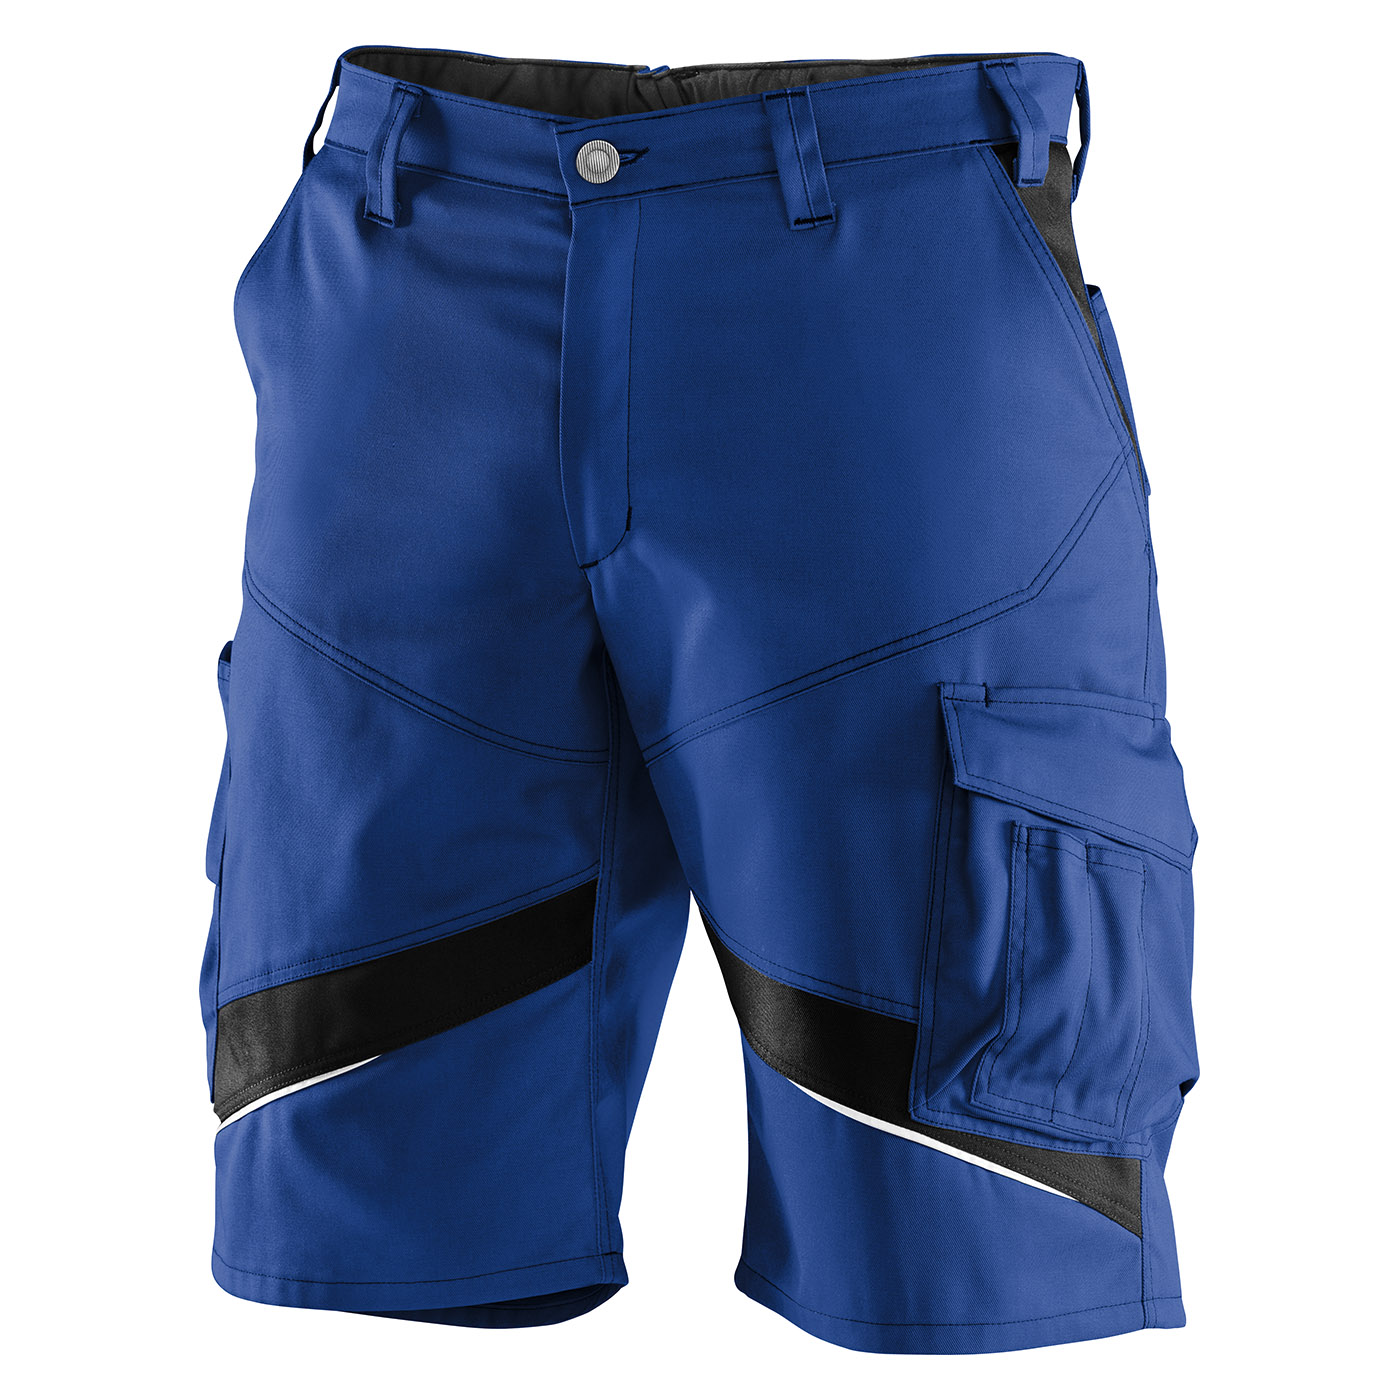 KÜBLER ACTIVIQ cotton+ Shorts | kbl.blau/schwarz | 42 | 2450 3421-4699-10-42